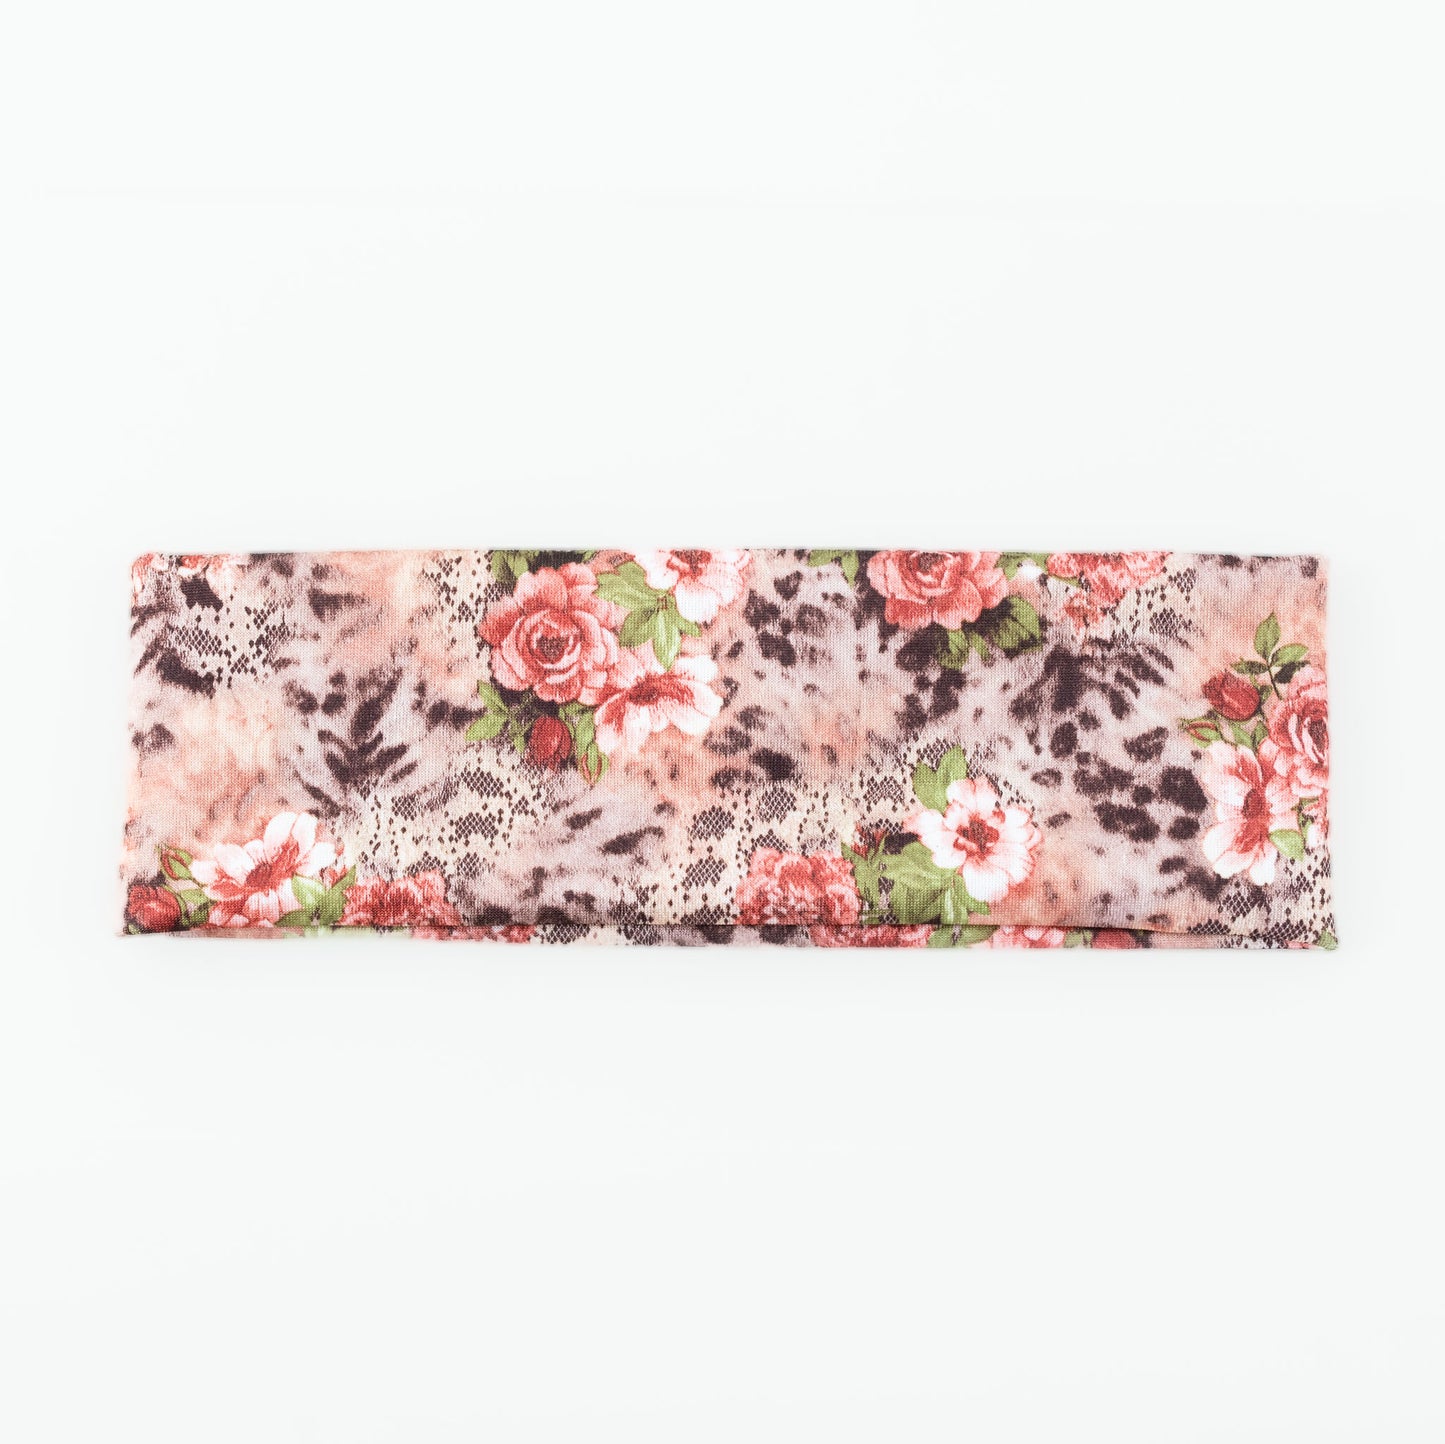 Bentiță de păr simplă cu, imprimeu floral garden - Roz